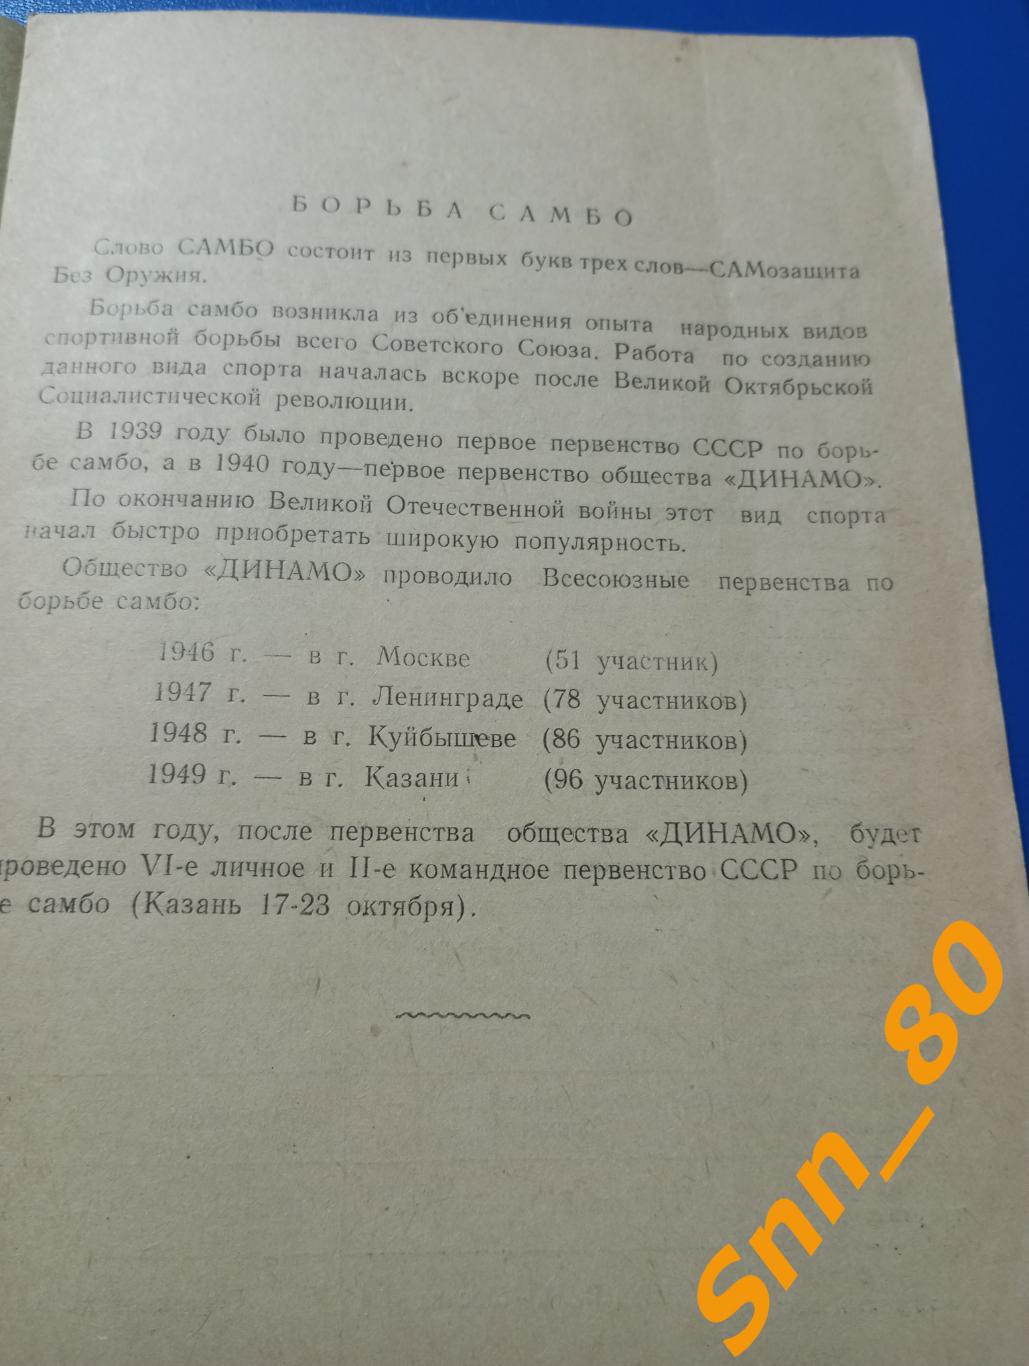 Борьба самбо 6-е Всесоюзное лично-командное первенство обществ Динамо 1950 Минск 1